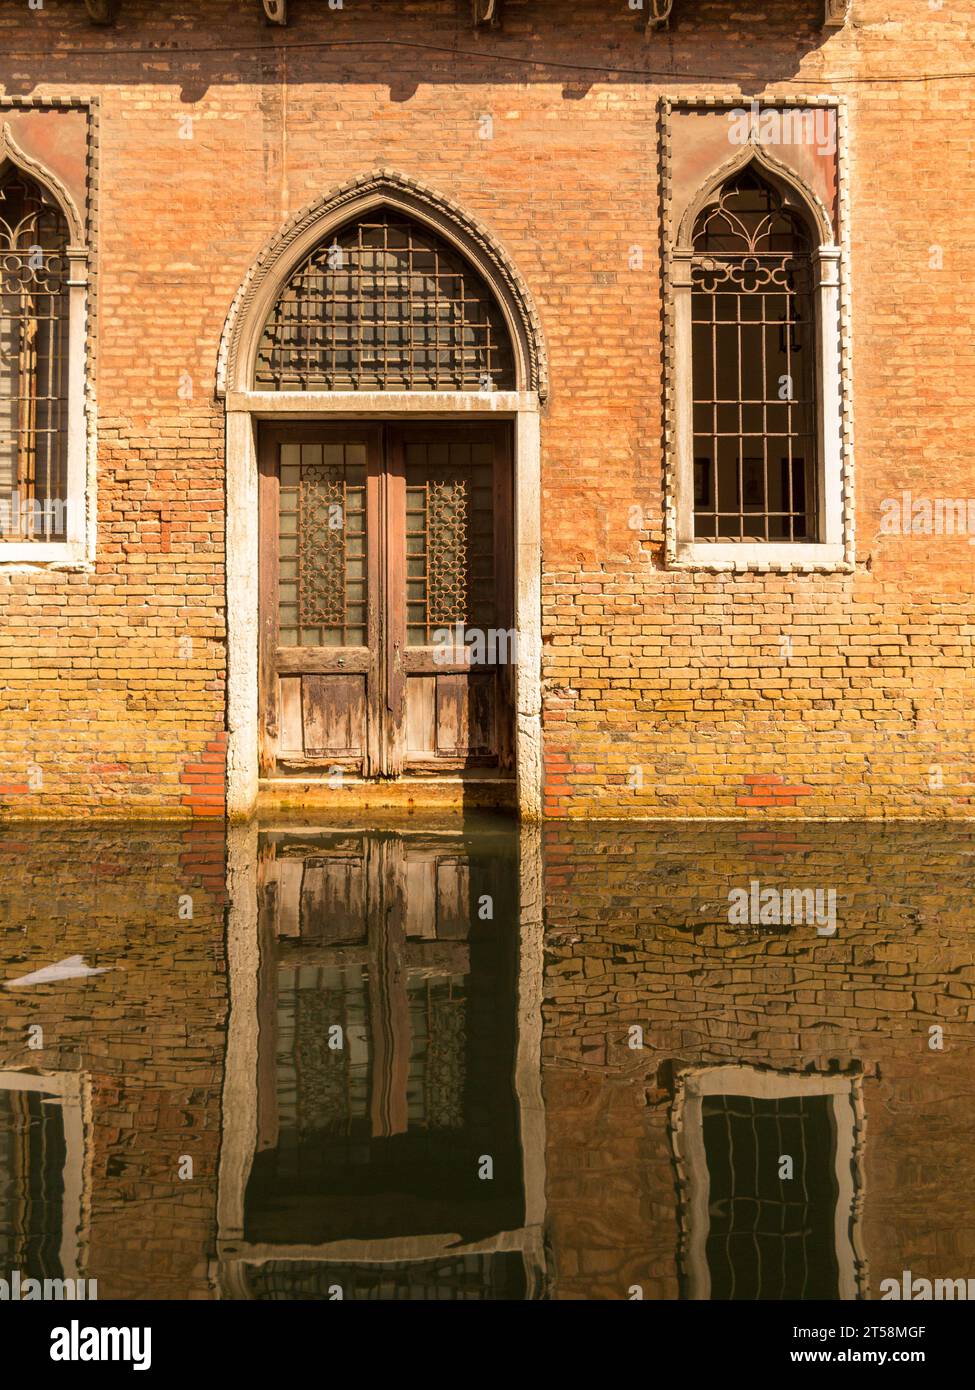 Fassade einer venezianischen Villa spiegelt sich im Wasser des Kanals. Türen und Fenster sind mit dekorativen Grills ausgestattet. Der ockerfarbene Ziegelstein und seine Reflexion c Stockfoto